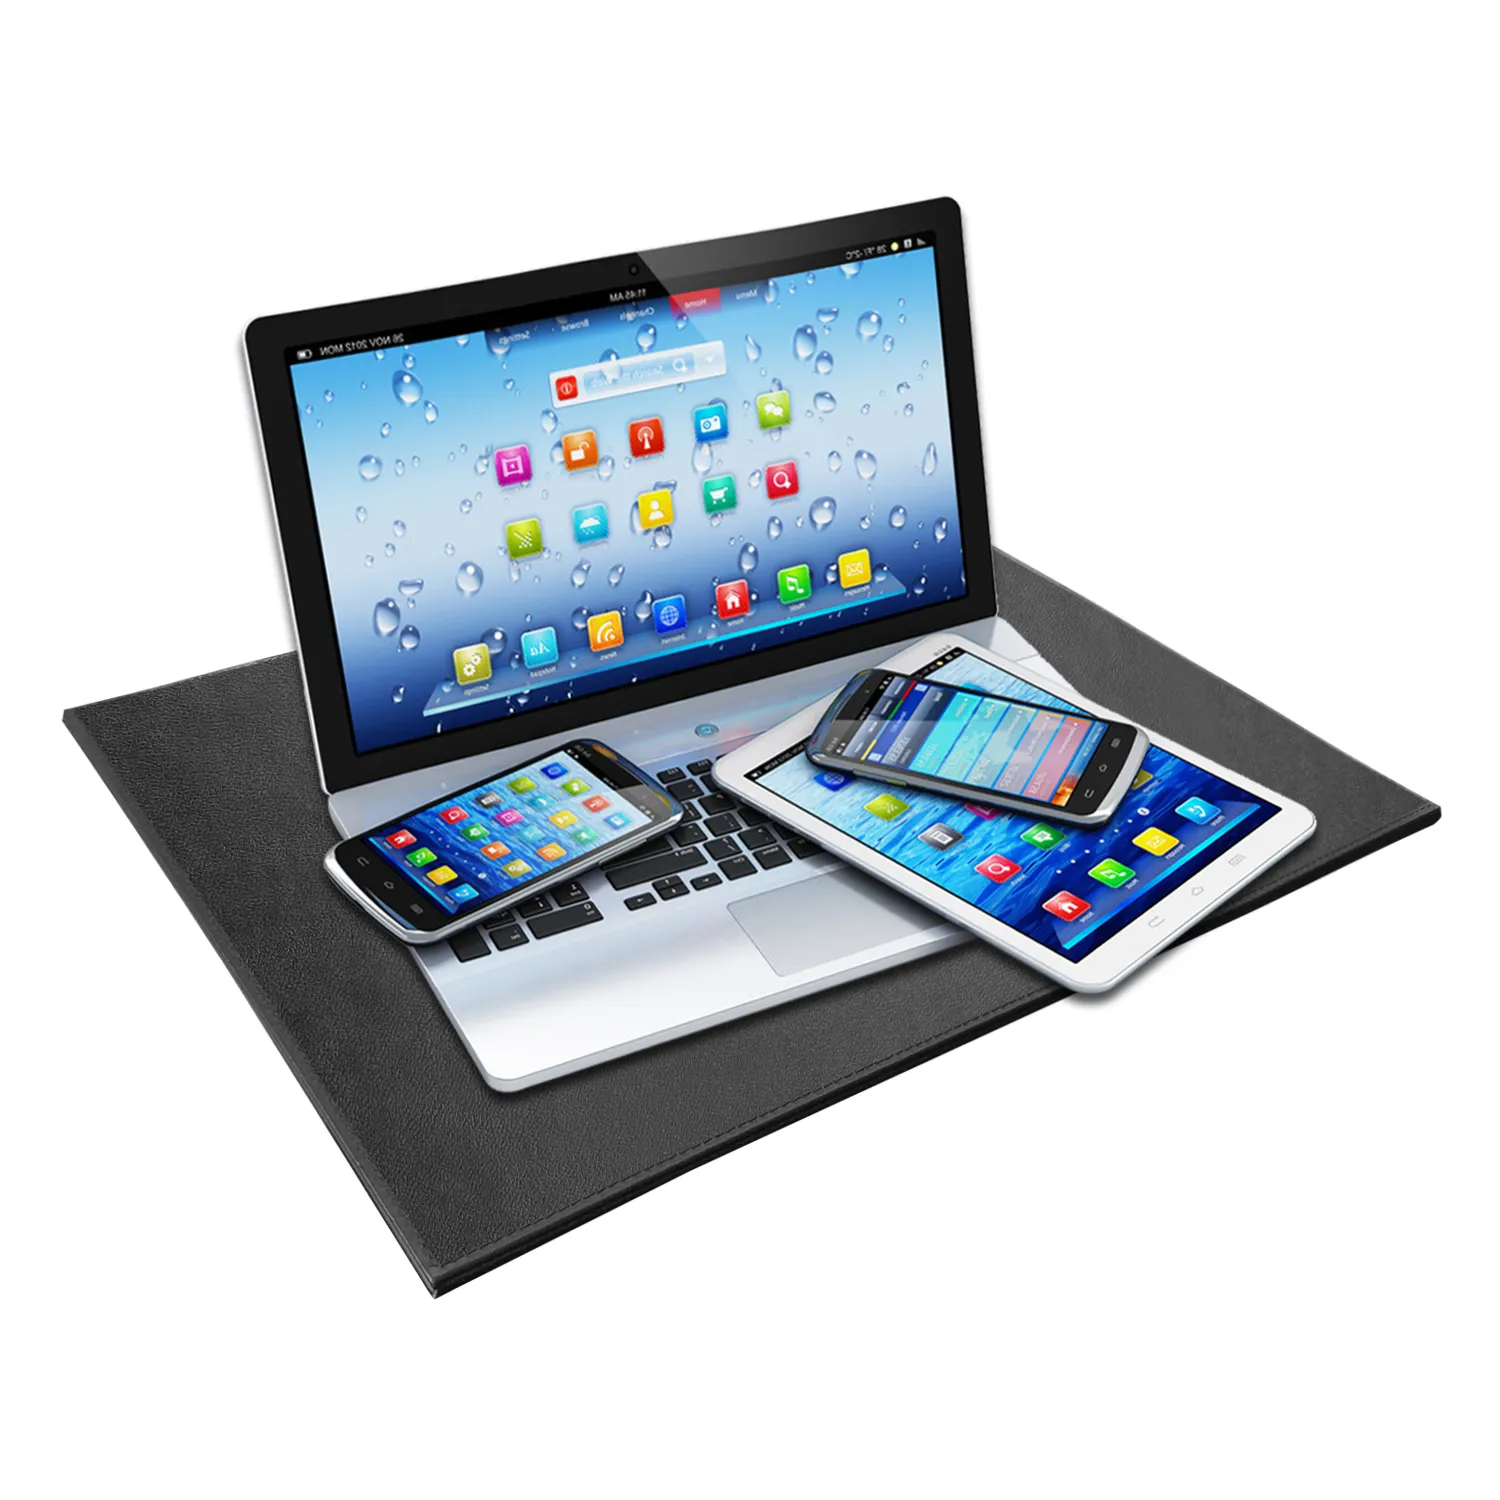 Bantalan Proteksi Radiasi Laptop Multi-lapis Pelindung Radiasi & Pemblokir EMF, Pelindung Radiasi untuk Laptop iPad MacBook